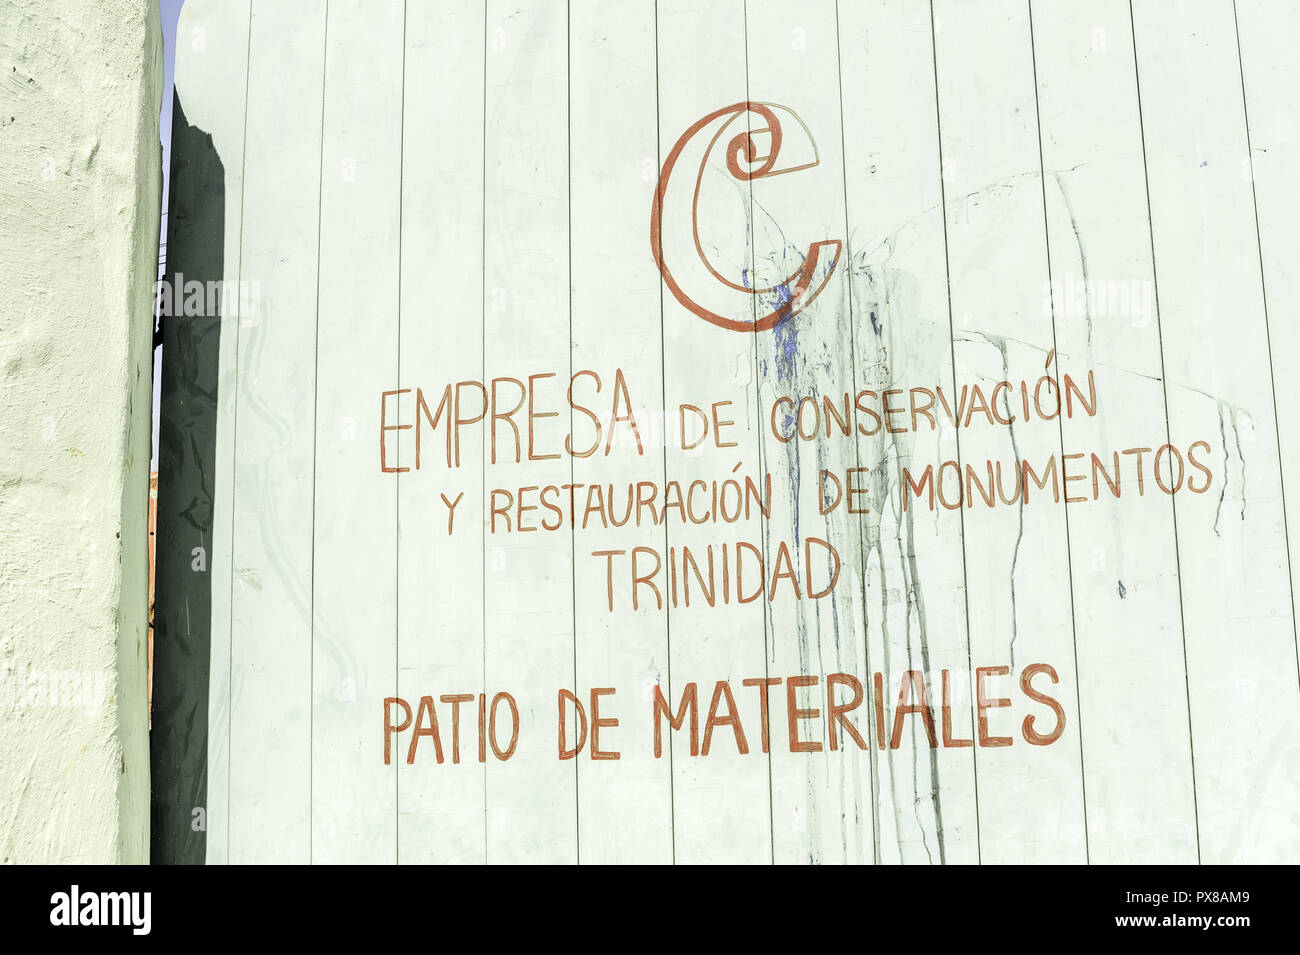 Cuba, Empresa de conservacion y restauracion de monumuntos, Patio de materiales, Sancti Spiritus, Trinidad Stock Photo